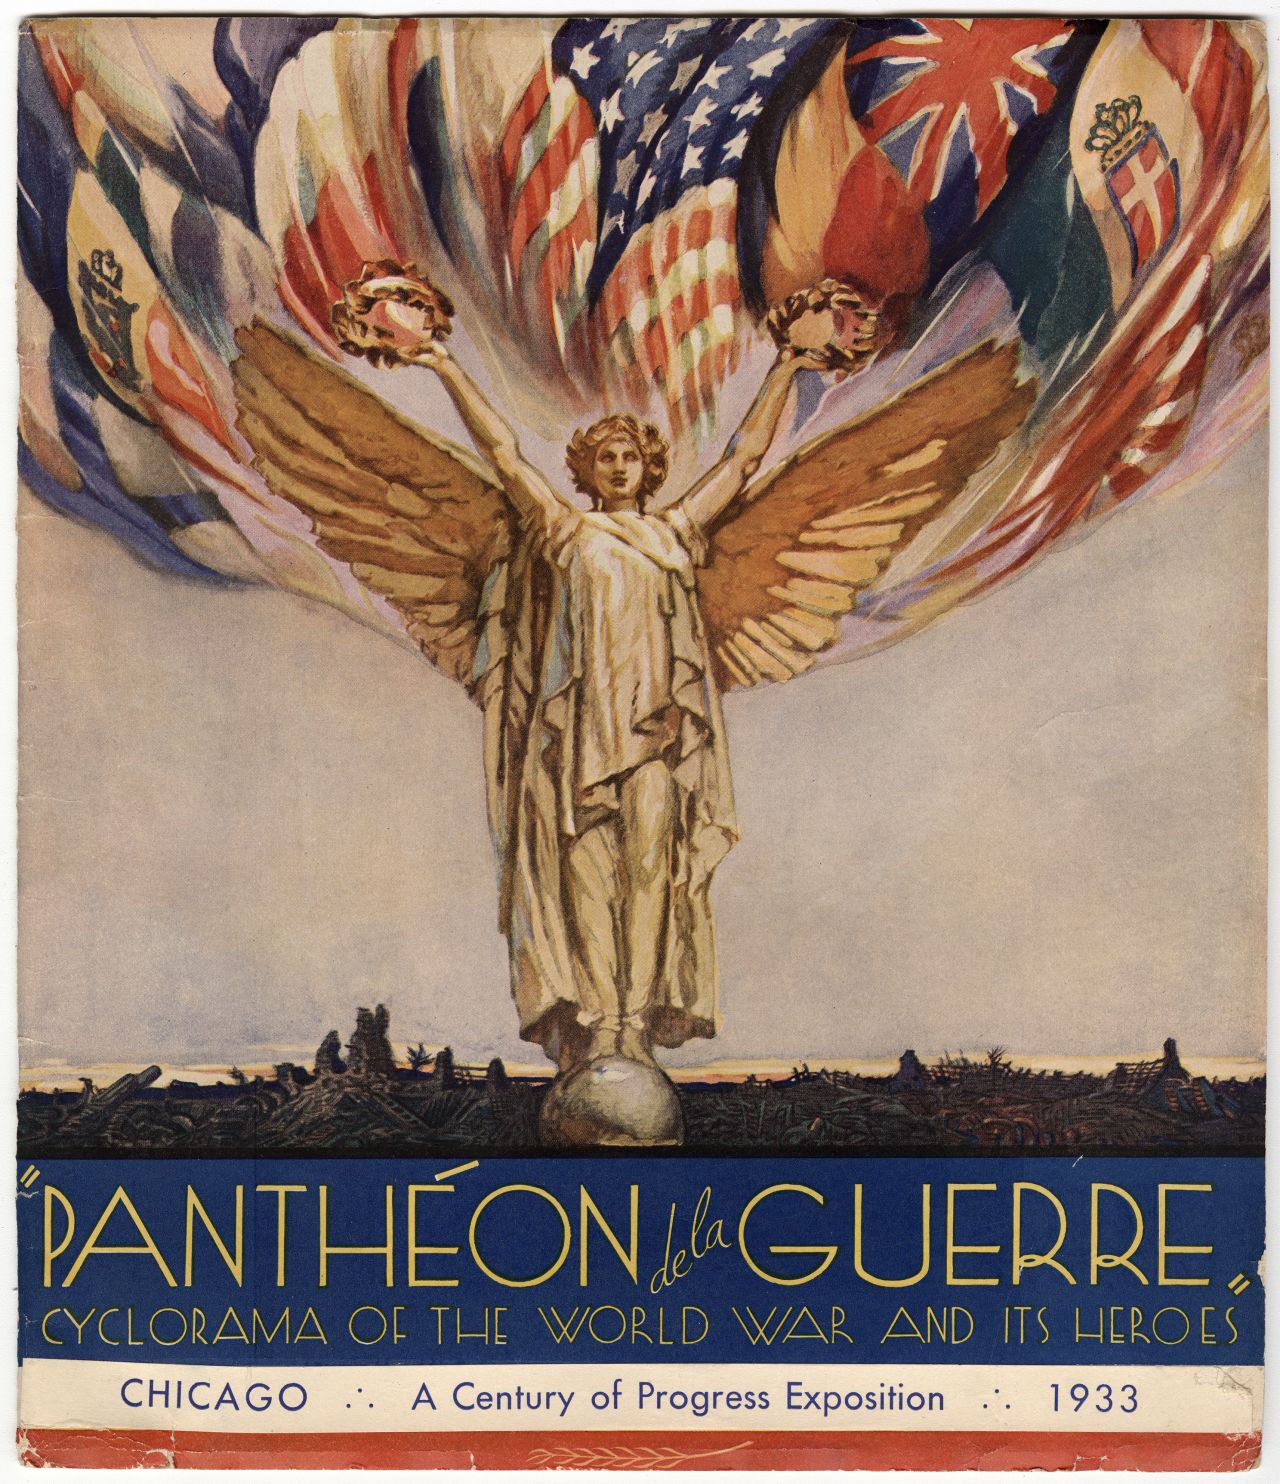 A program cover from the 1933 World Fair featuring the "Panthéon de la Guerre."